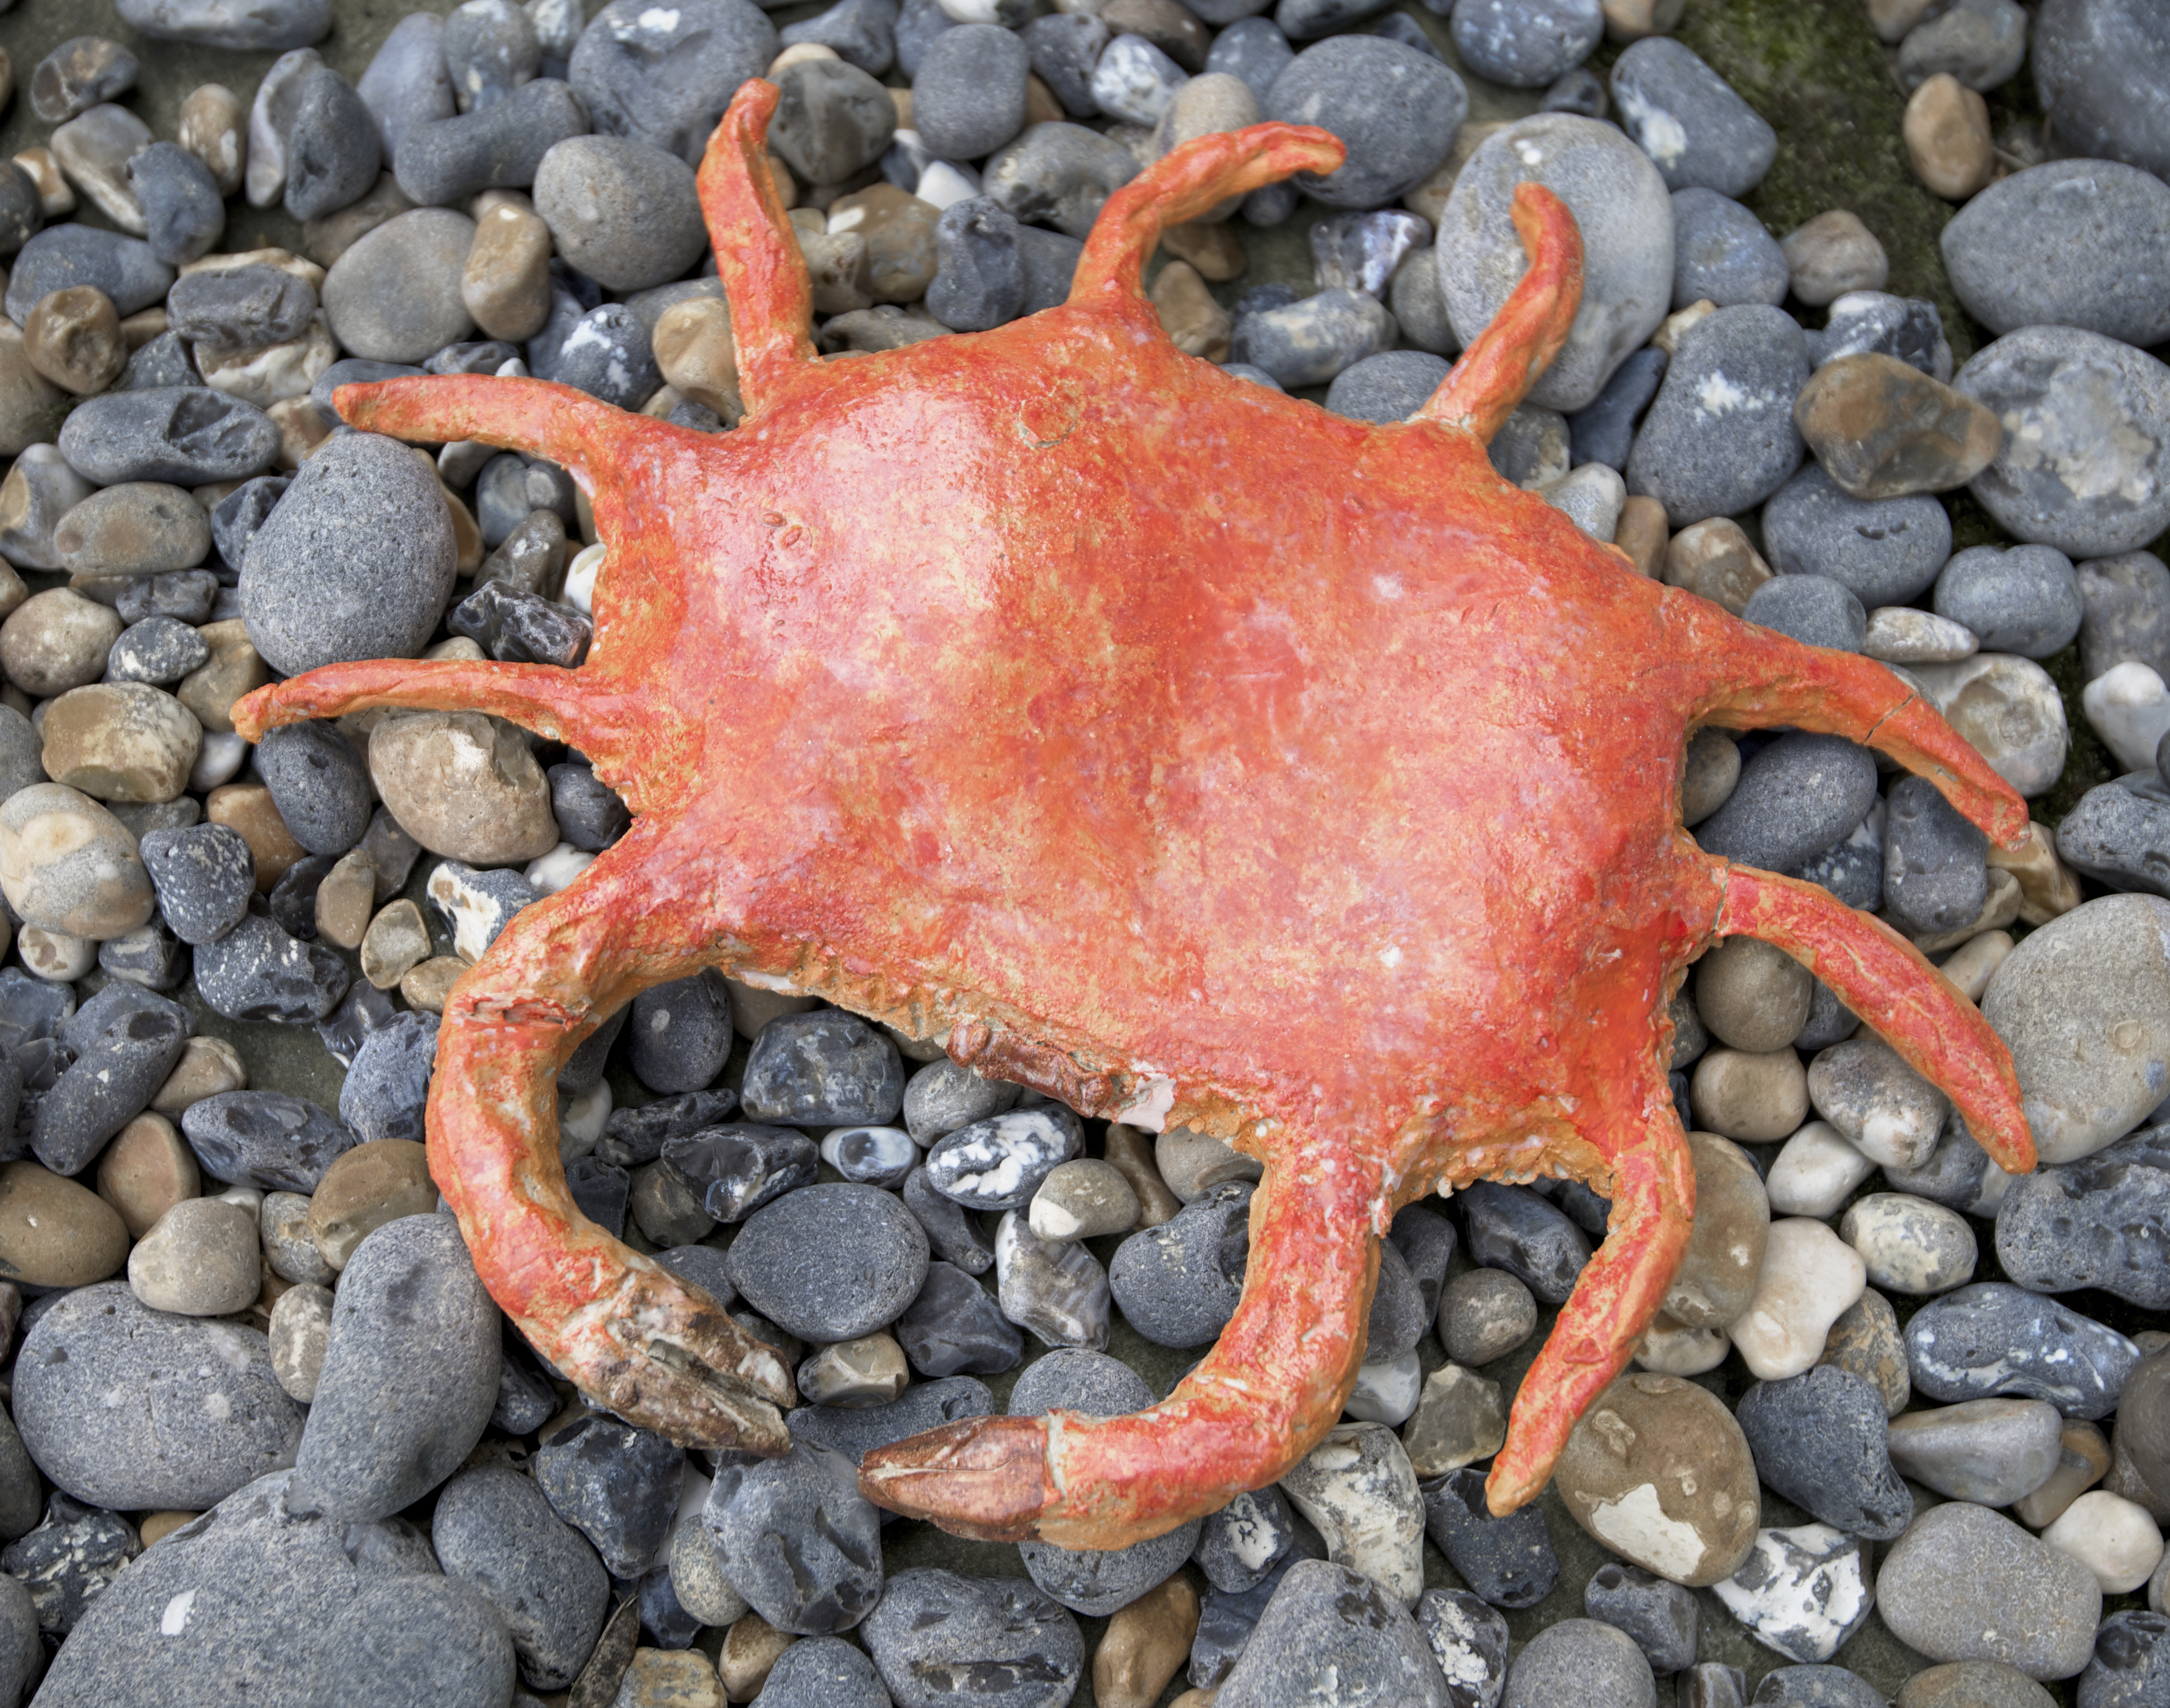 Psiche, Crab, 2016, glazed ceramic